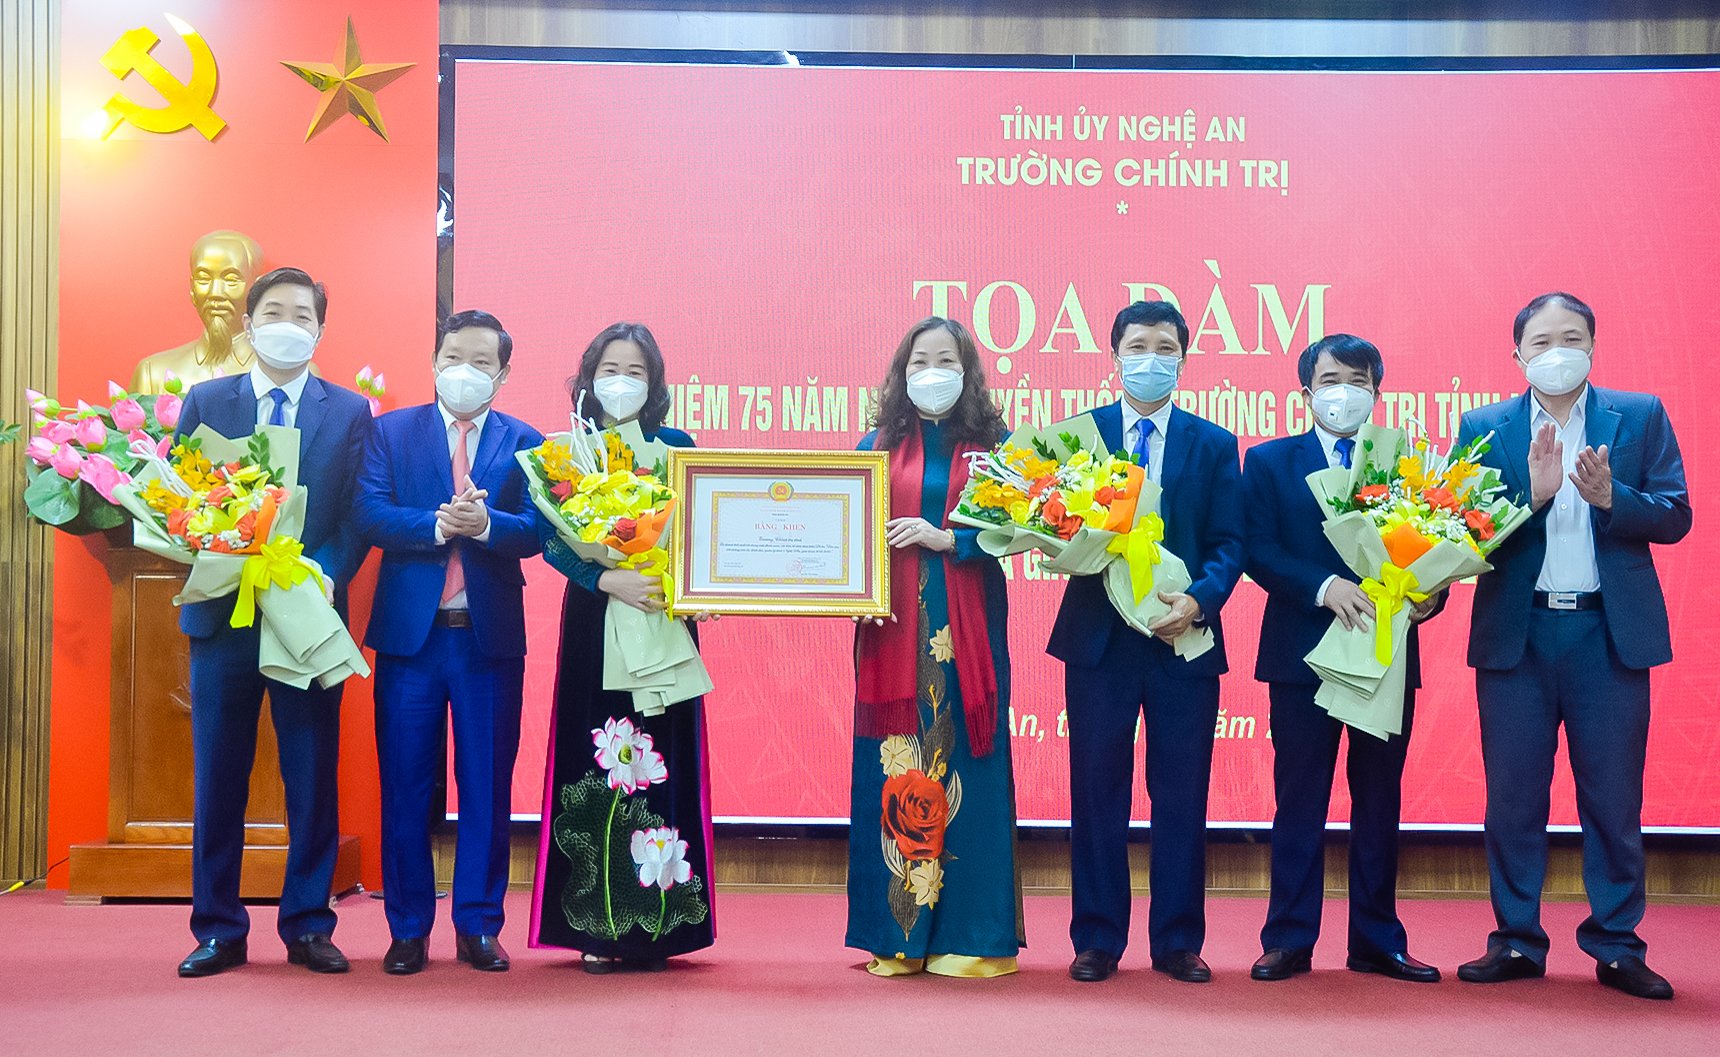 Trường Chính trị tỉnh Nghệ An tổ chức Tọa đàm kỷ niệm 75 năm ngày thành lập